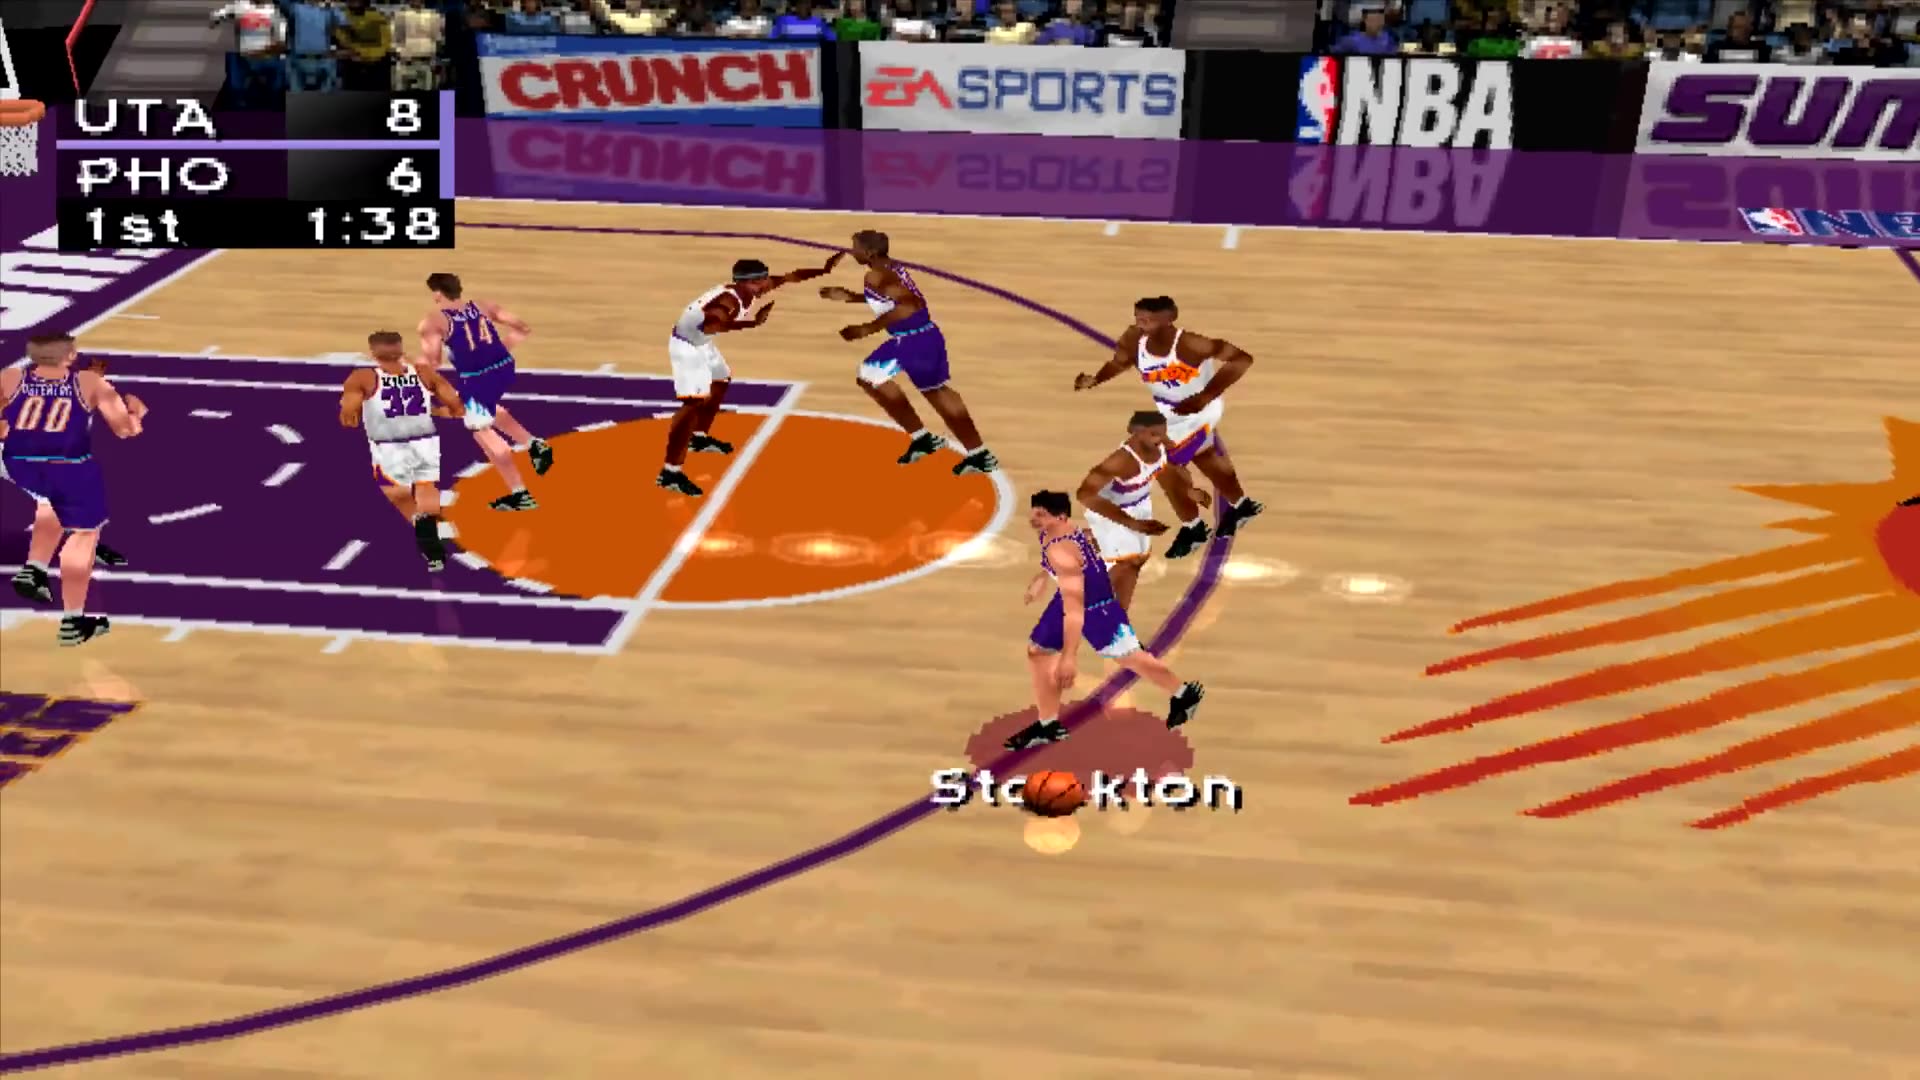 没有2K之前大家的篮球游戏是这个 画面非常卡通呆萌